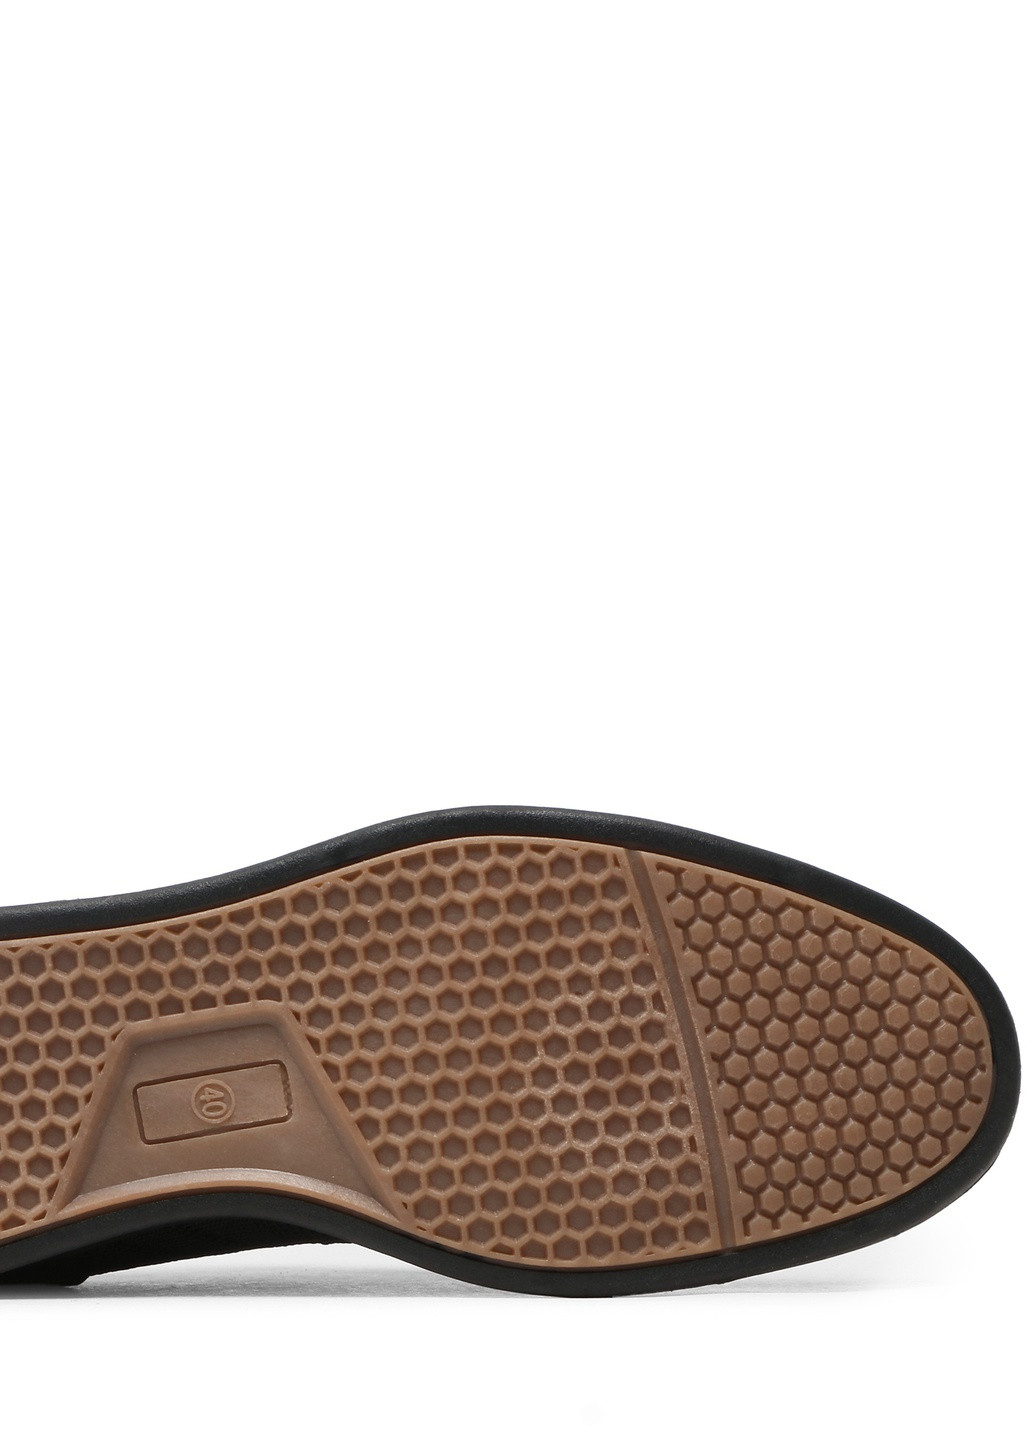 Черные осенние туфли mp07-02108-01 Lanetti